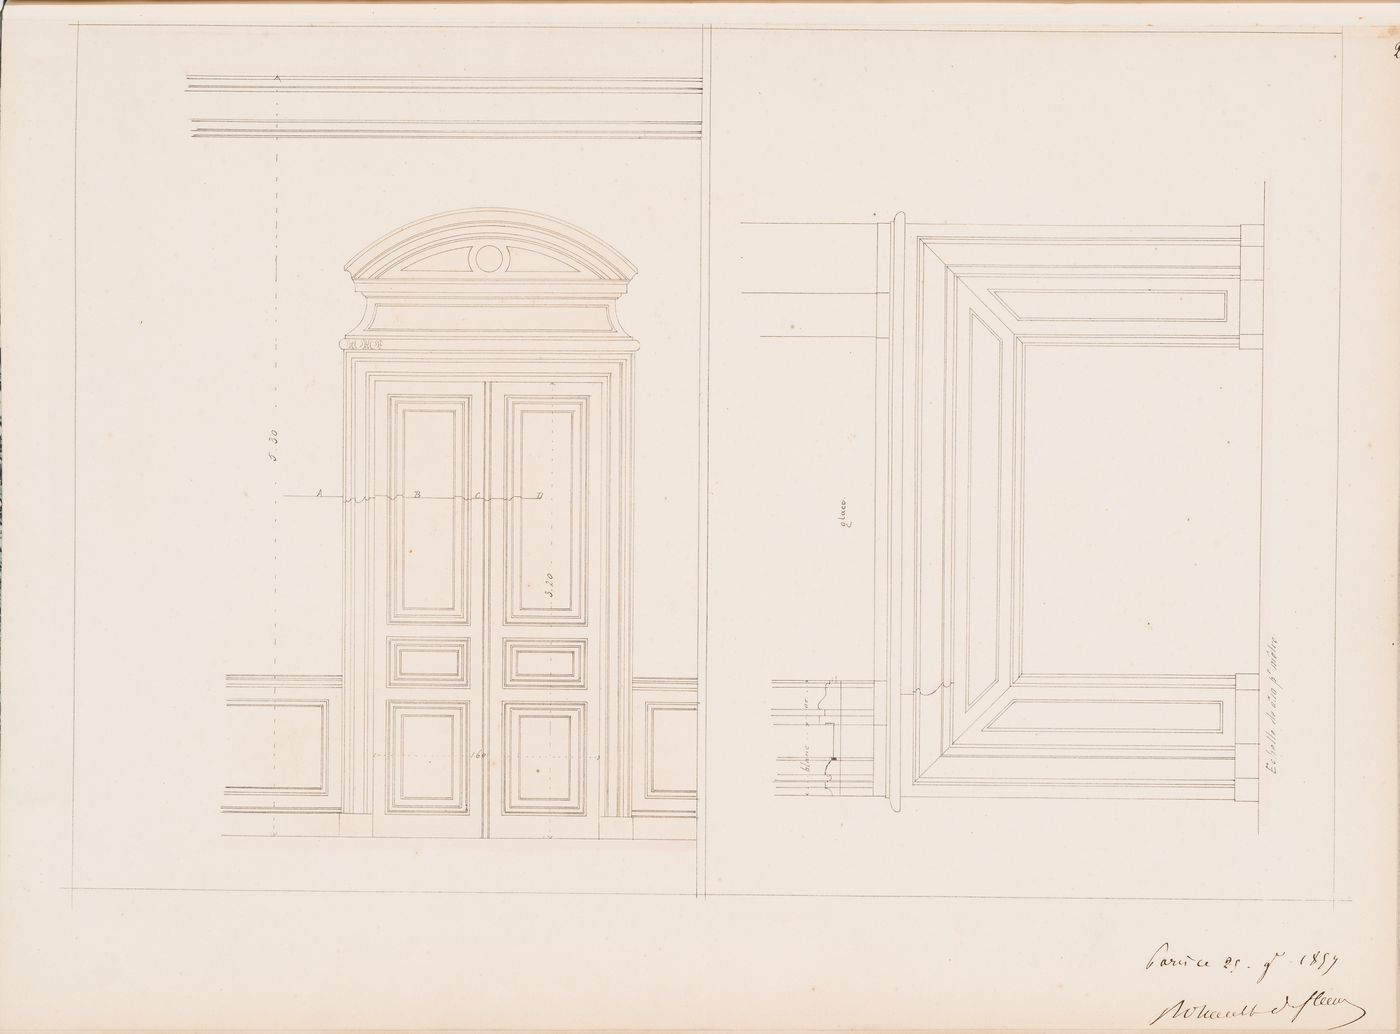 Project for a Hôtel de préfecture, Poitiers: Interior elevations for a mantel and door for the Hôtel du Préfet, possibly for the "salon de l'empereur"